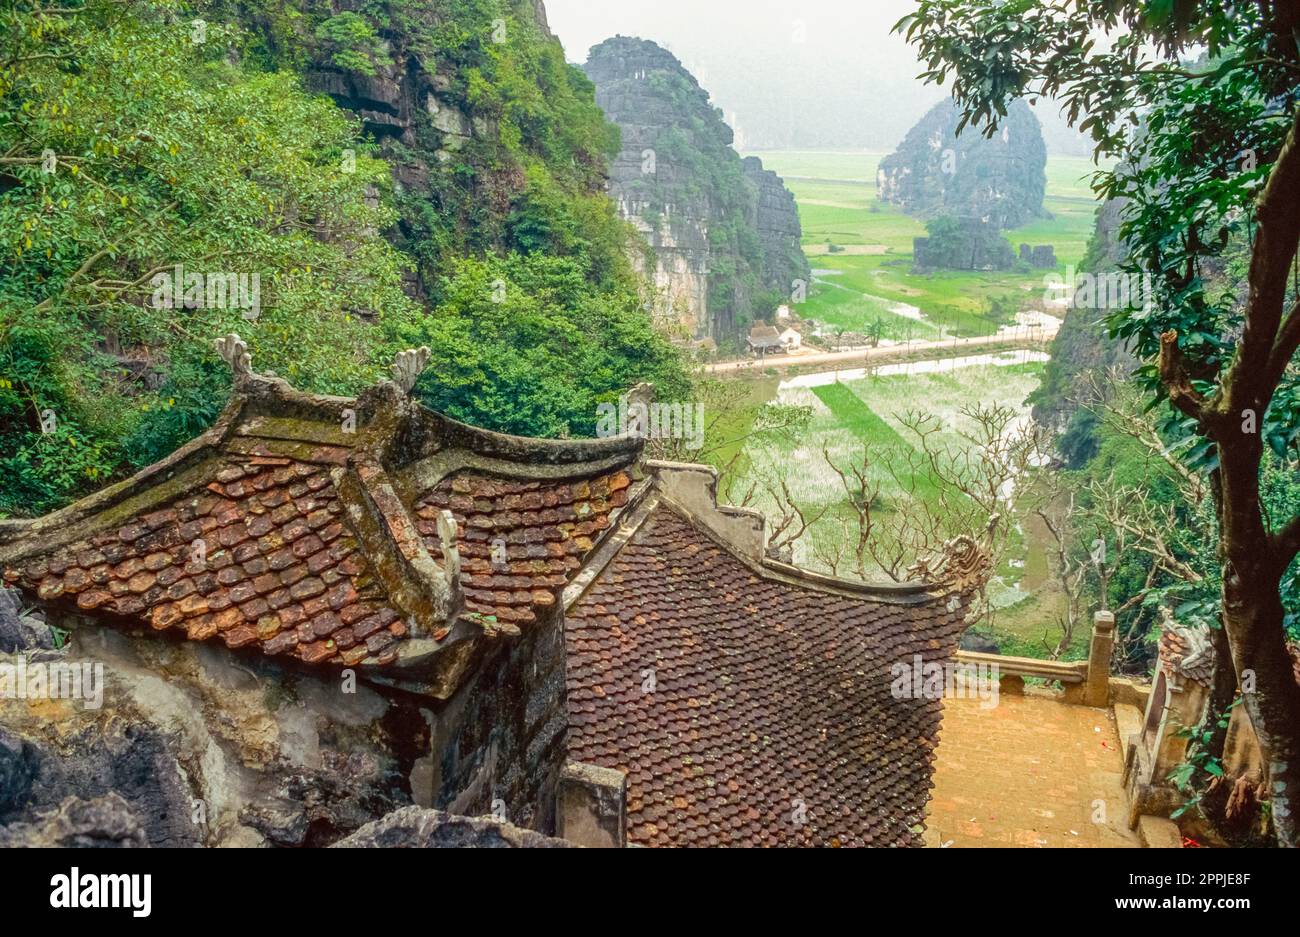 Scannerizzata di una fotografia storica a colori di un complesso di templi buddisti ai piedi di una roccia nel nord del Vietnam Foto Stock